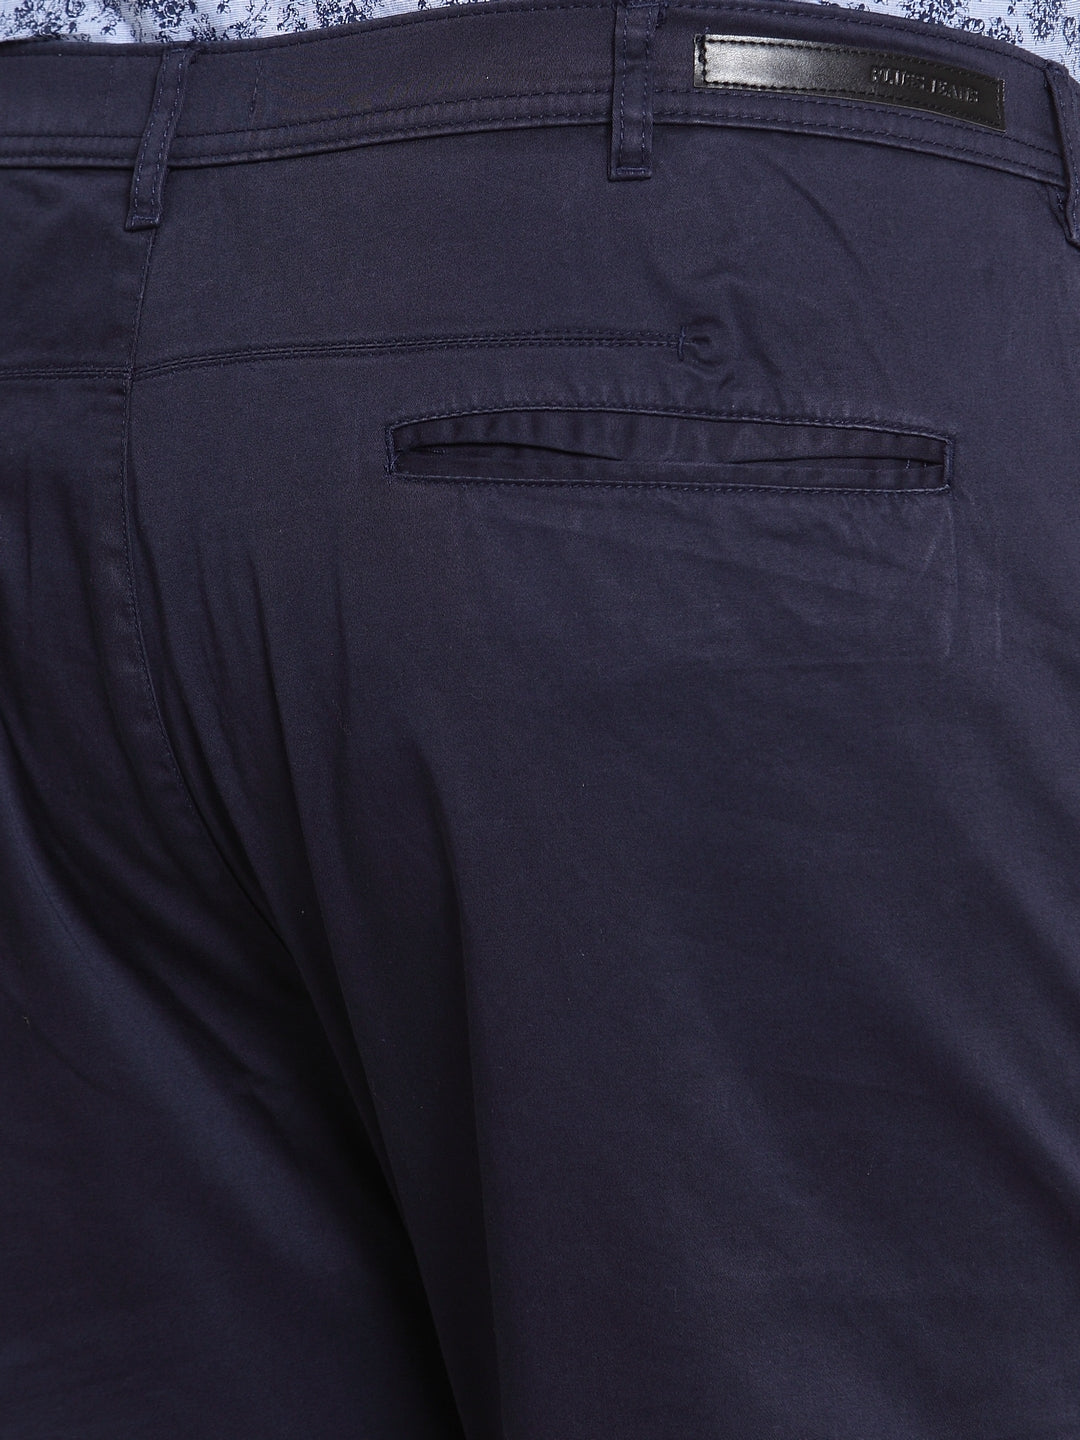 Mens Blue Slim Fit Dress Pants | Gerardo Collection